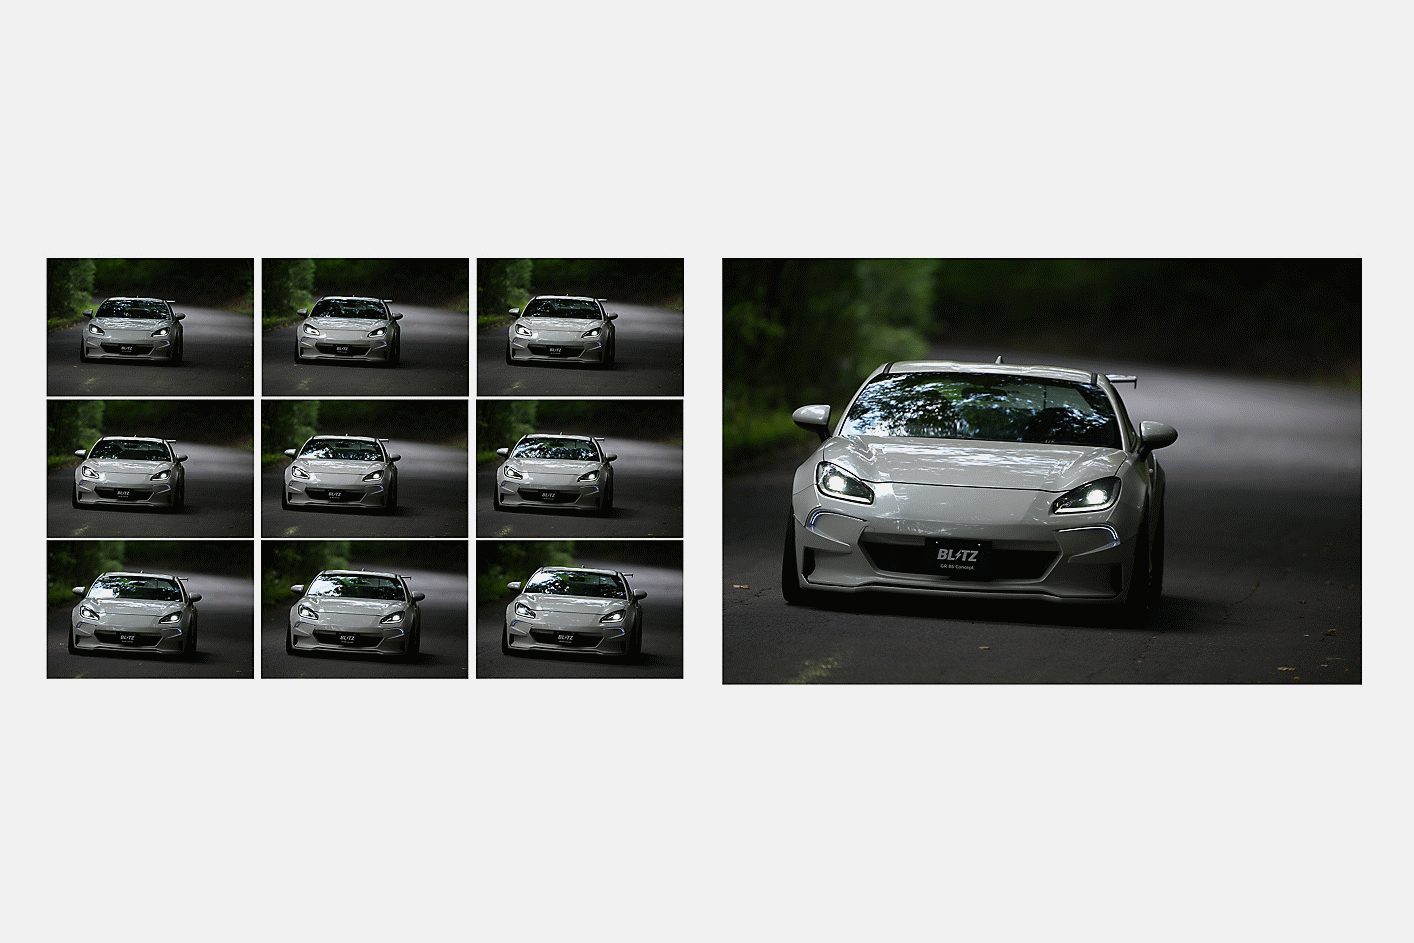 Зображення автомобіля, зняті в режимі серійної зйомки зі швидкістю 10 кадр./с з відстеженням для автофокусування й автоекспозиції